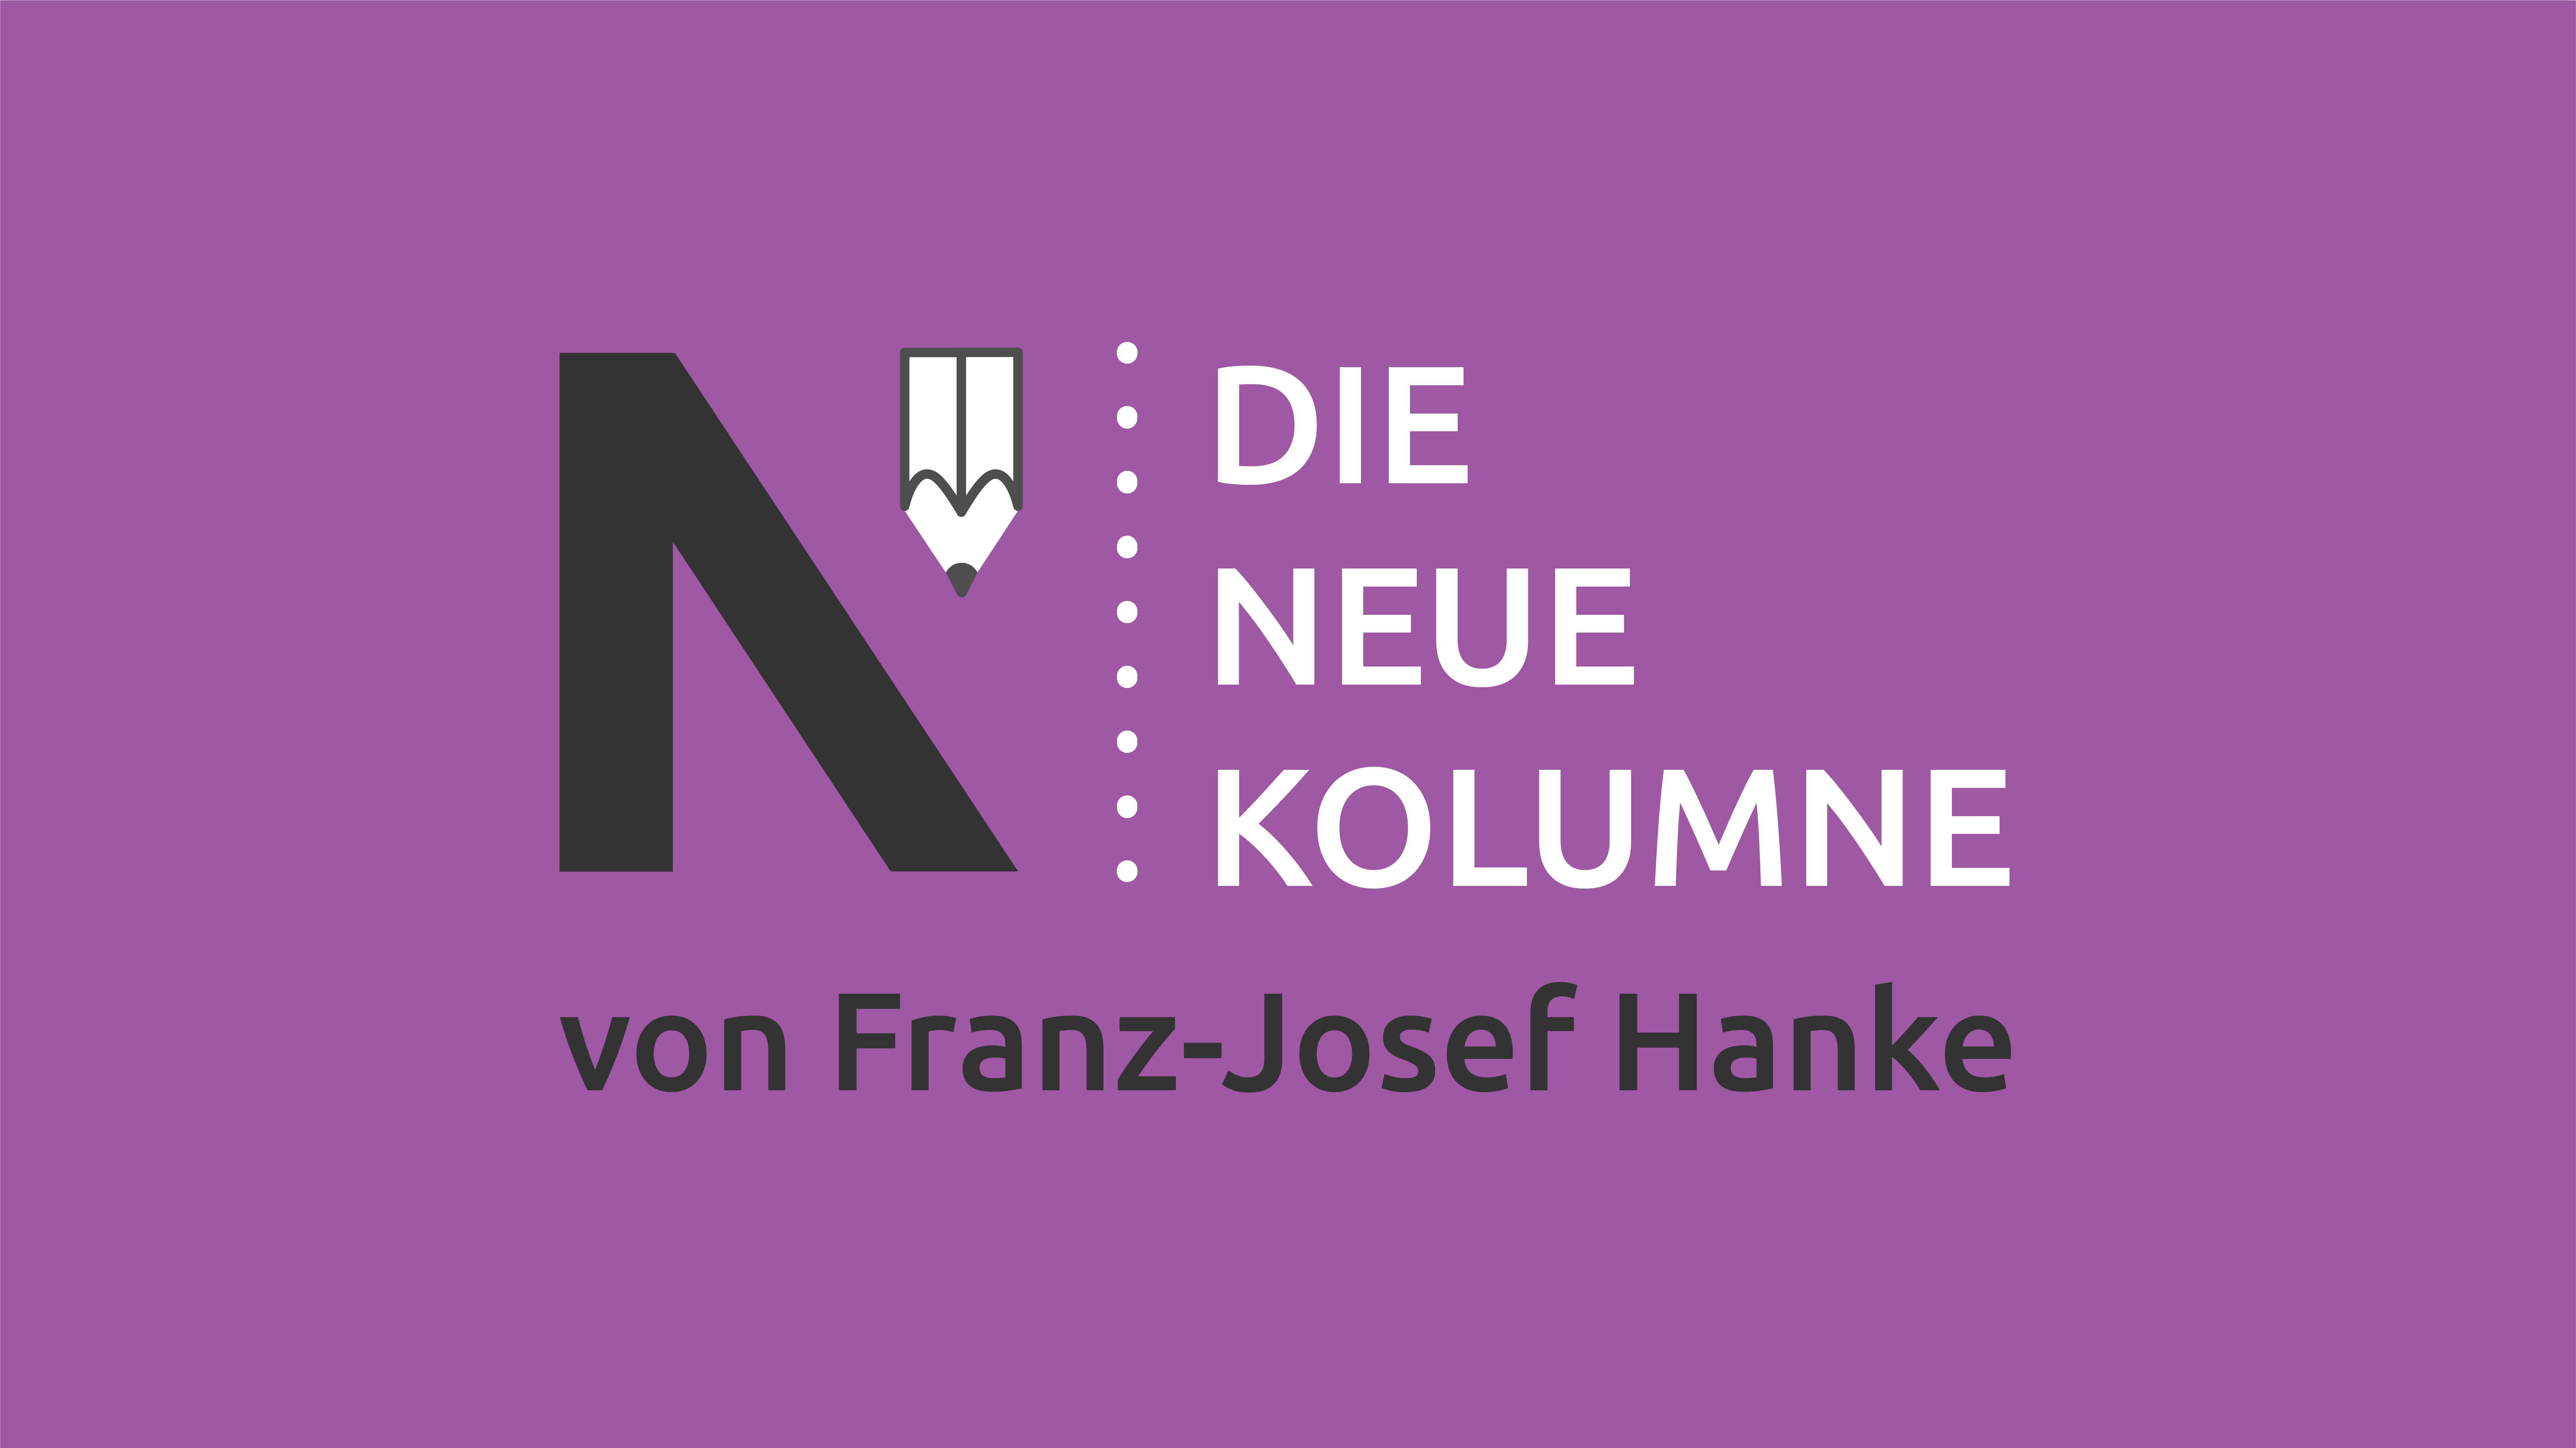 Das Logo von Die Neue Norm auf lila Grund. Rechts davon steht: Die Neue Kolumne. Unten steht: Von Franz-Josef Hanke.